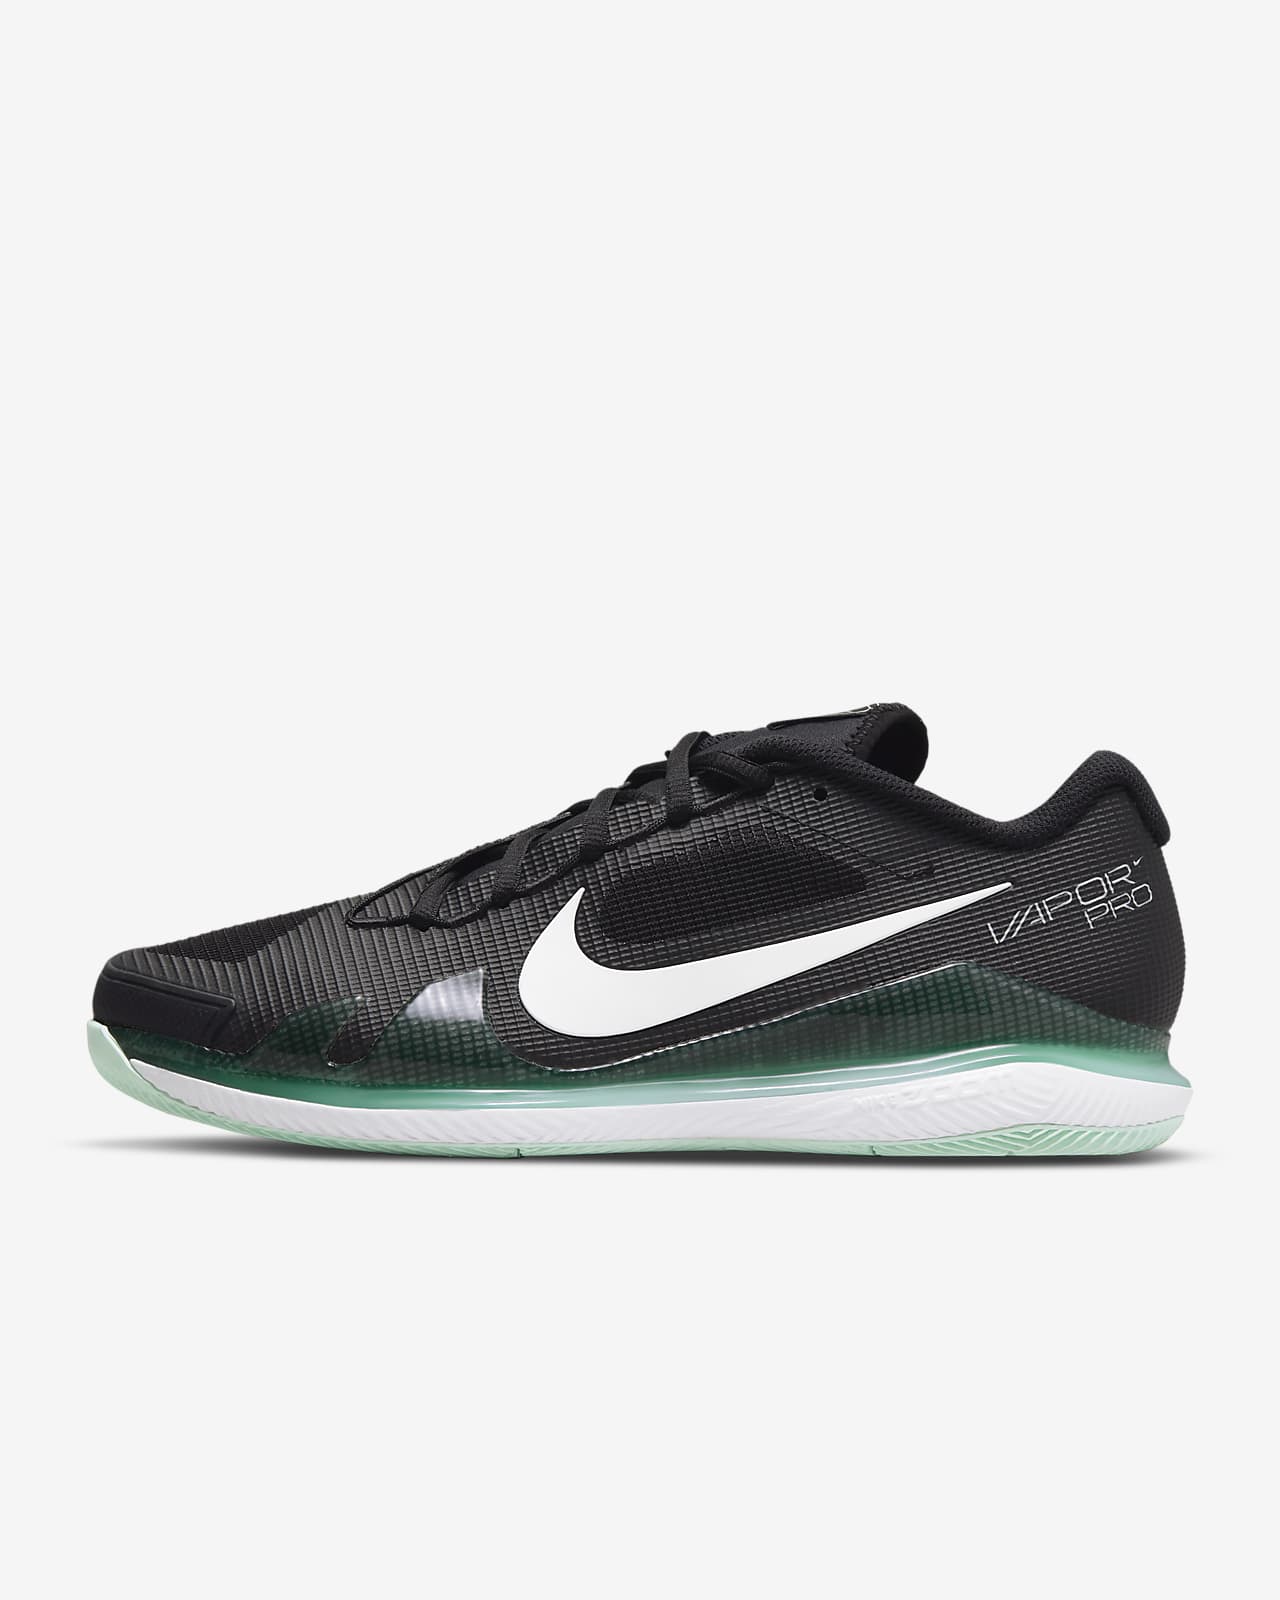 NikeCourt Air Zoom Vapor Pro Men's Hard Court Tennis Shoes